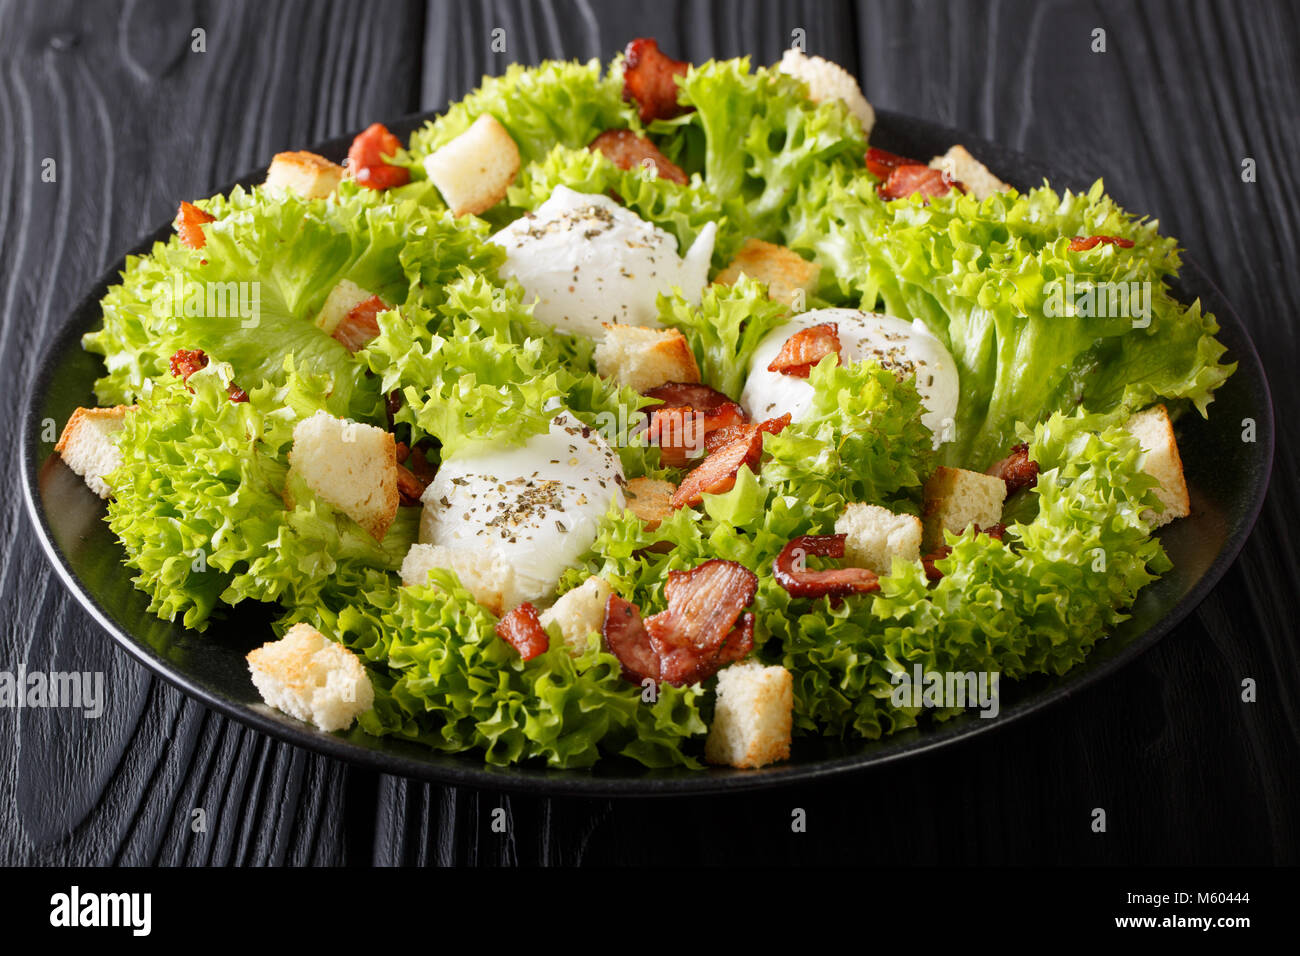 Cuisine française : Salade Lyonnaise de laitue, de bacon, de croûtons et œufs pochés sur une plaque horizontale sur la table. Banque D'Images